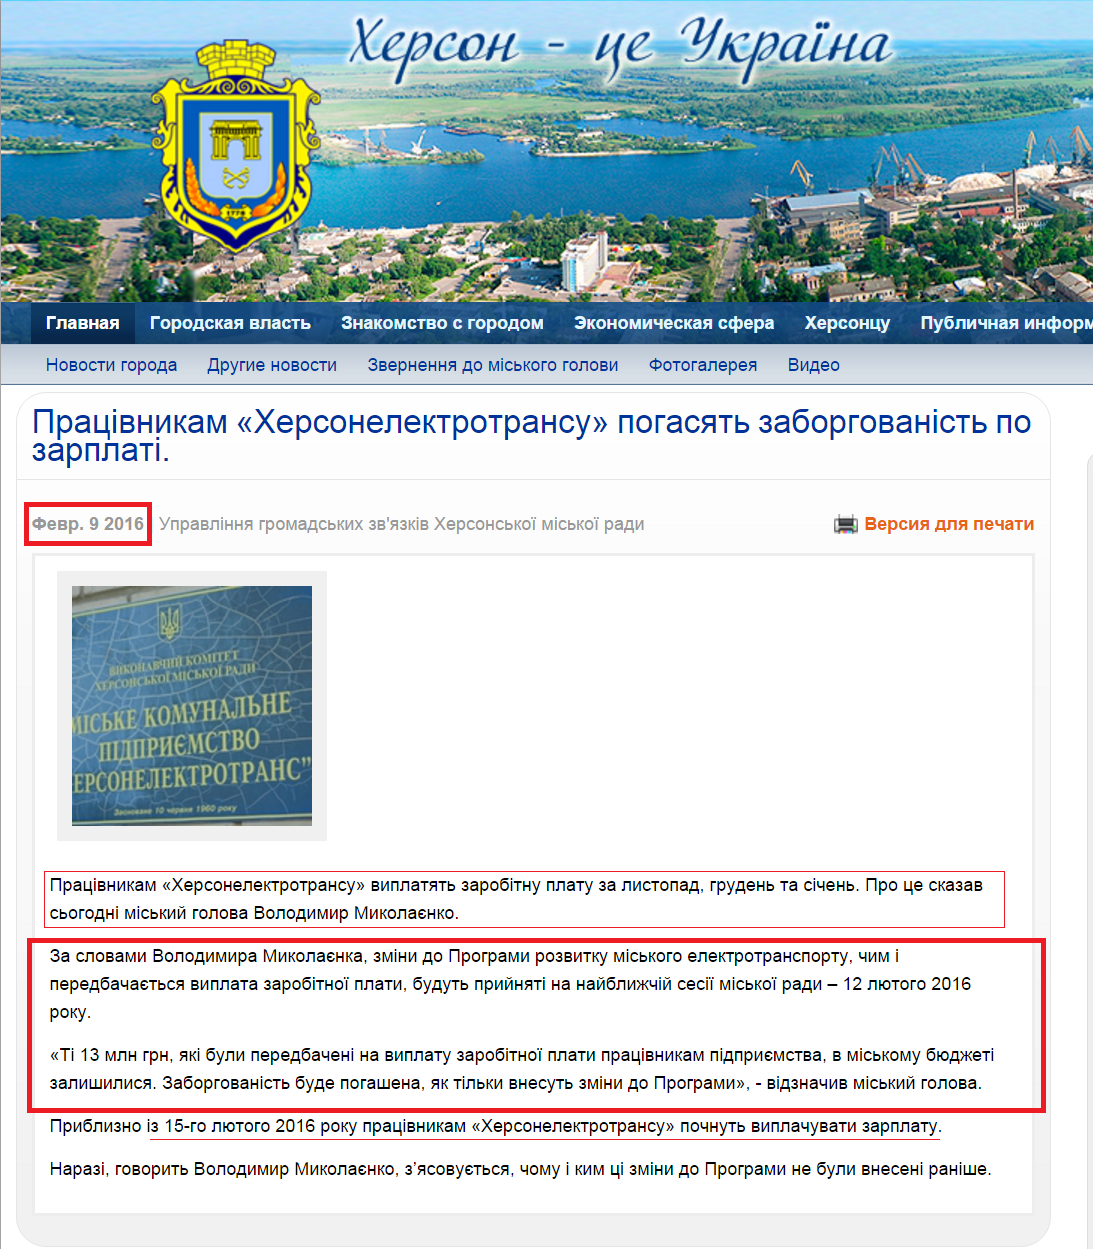 http://www.city.kherson.ua/news_detail/pracivnikam-_hersonelektrotransu_-pogasyat-zaborgovanist-po-zarplati